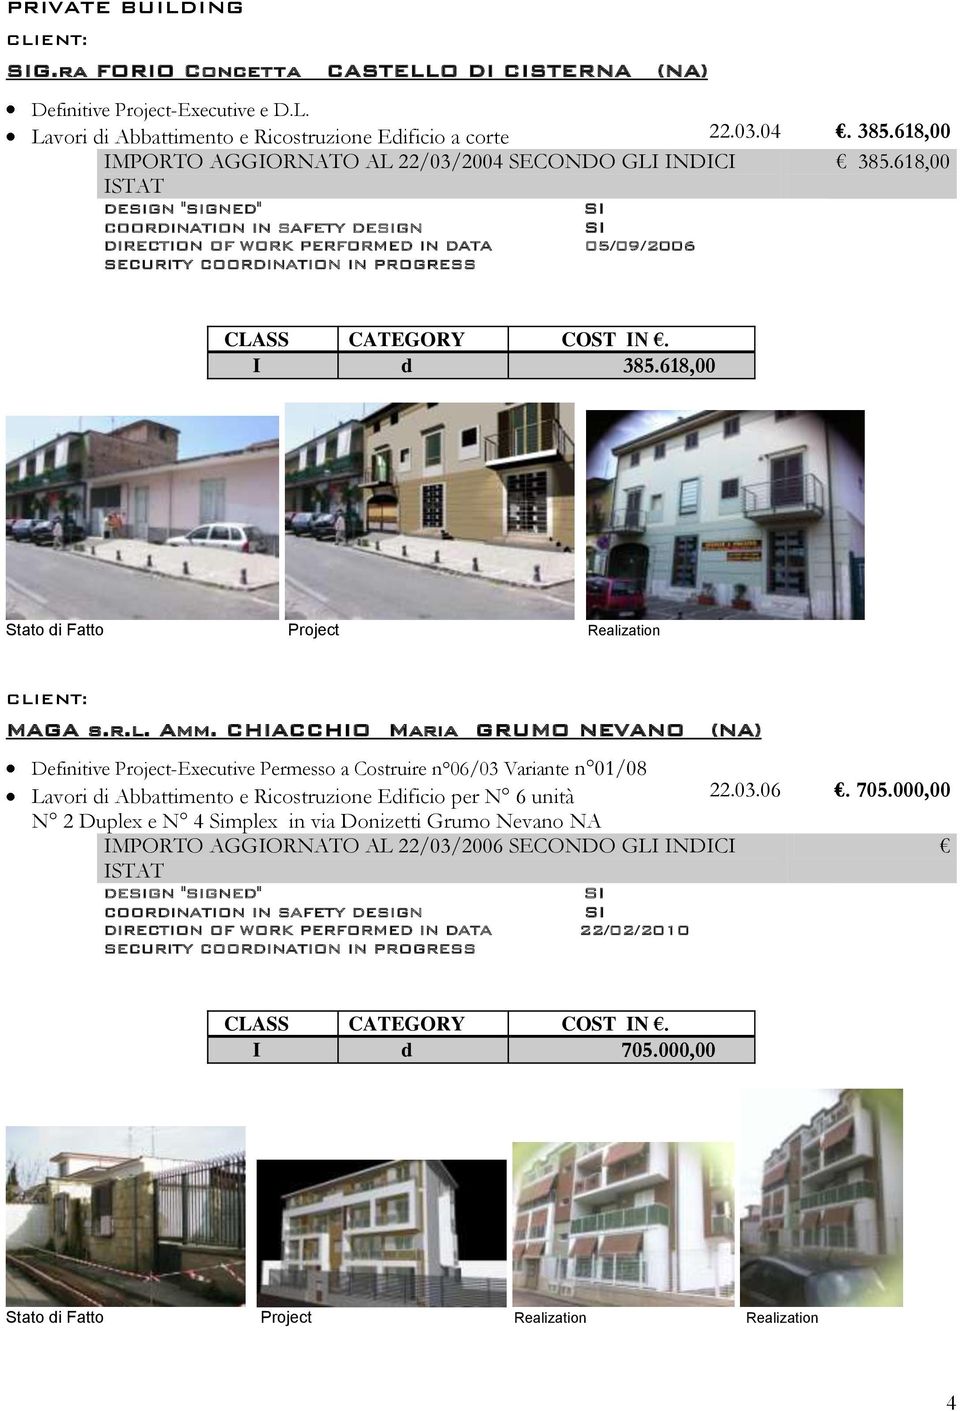 CHIACCHIO Maria GRUMO NEVANO (NA) Definitive -Executive Permesso a Costruire n 06/03 Variante n 01/08 Lavori di Abbattimento e Ricostruzione Edificio per N 6 unità 22.03.06. 705.